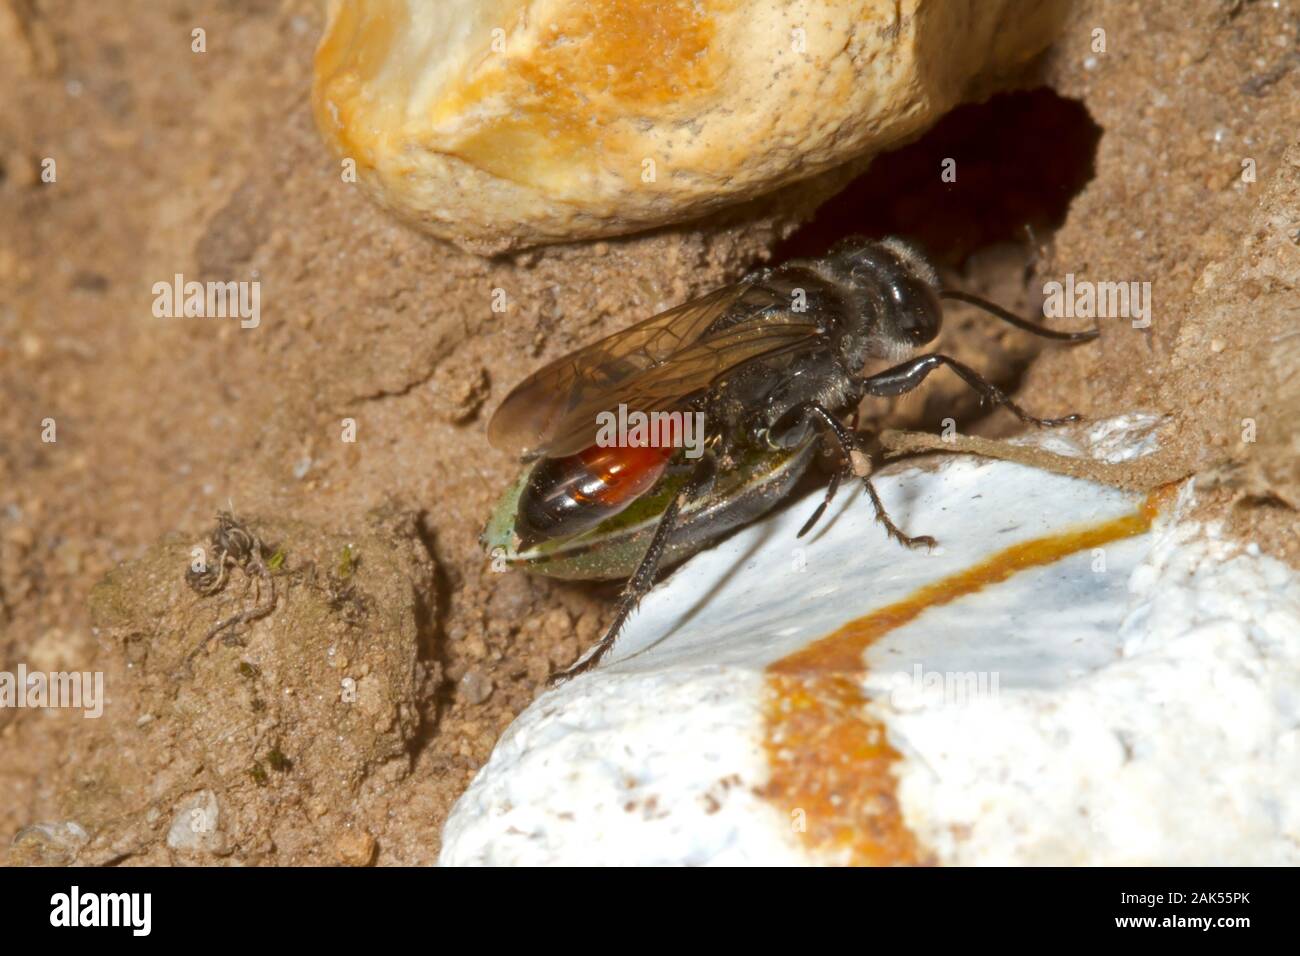 Astata boops -una especie de avispa depredadora solitario Foto de stock